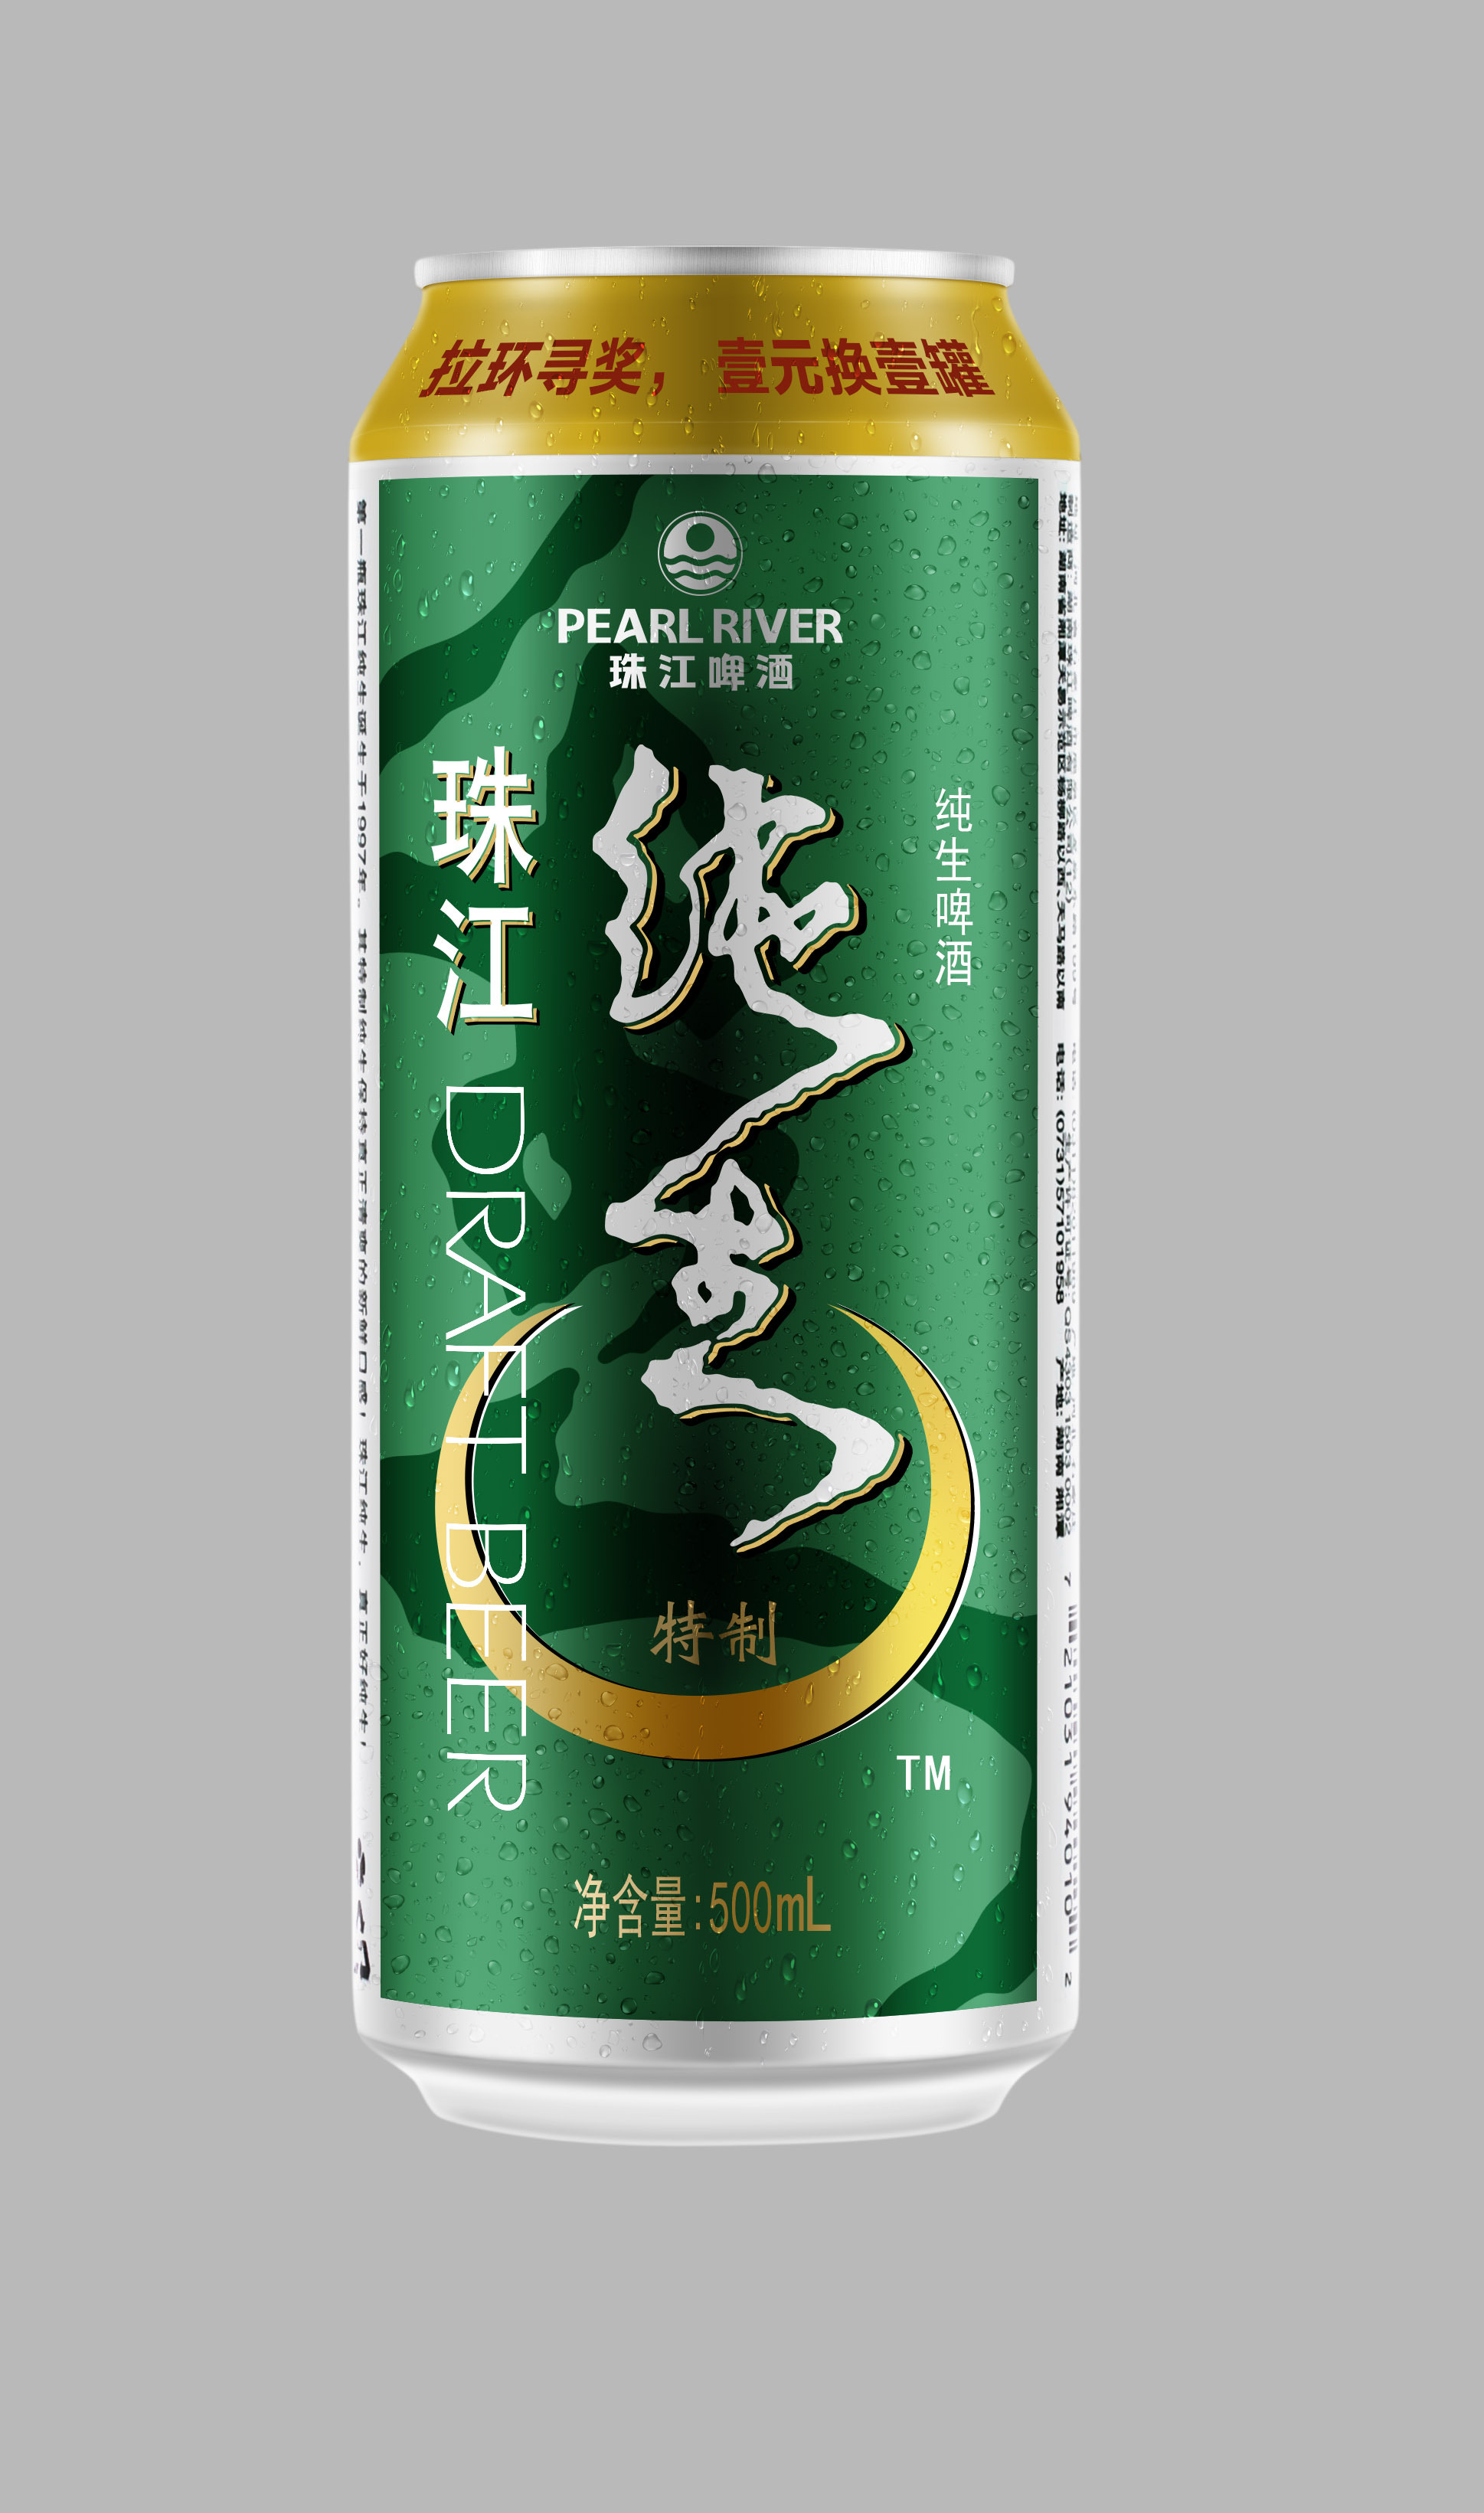 珠江纯生啤酒图片-图库-五毛网